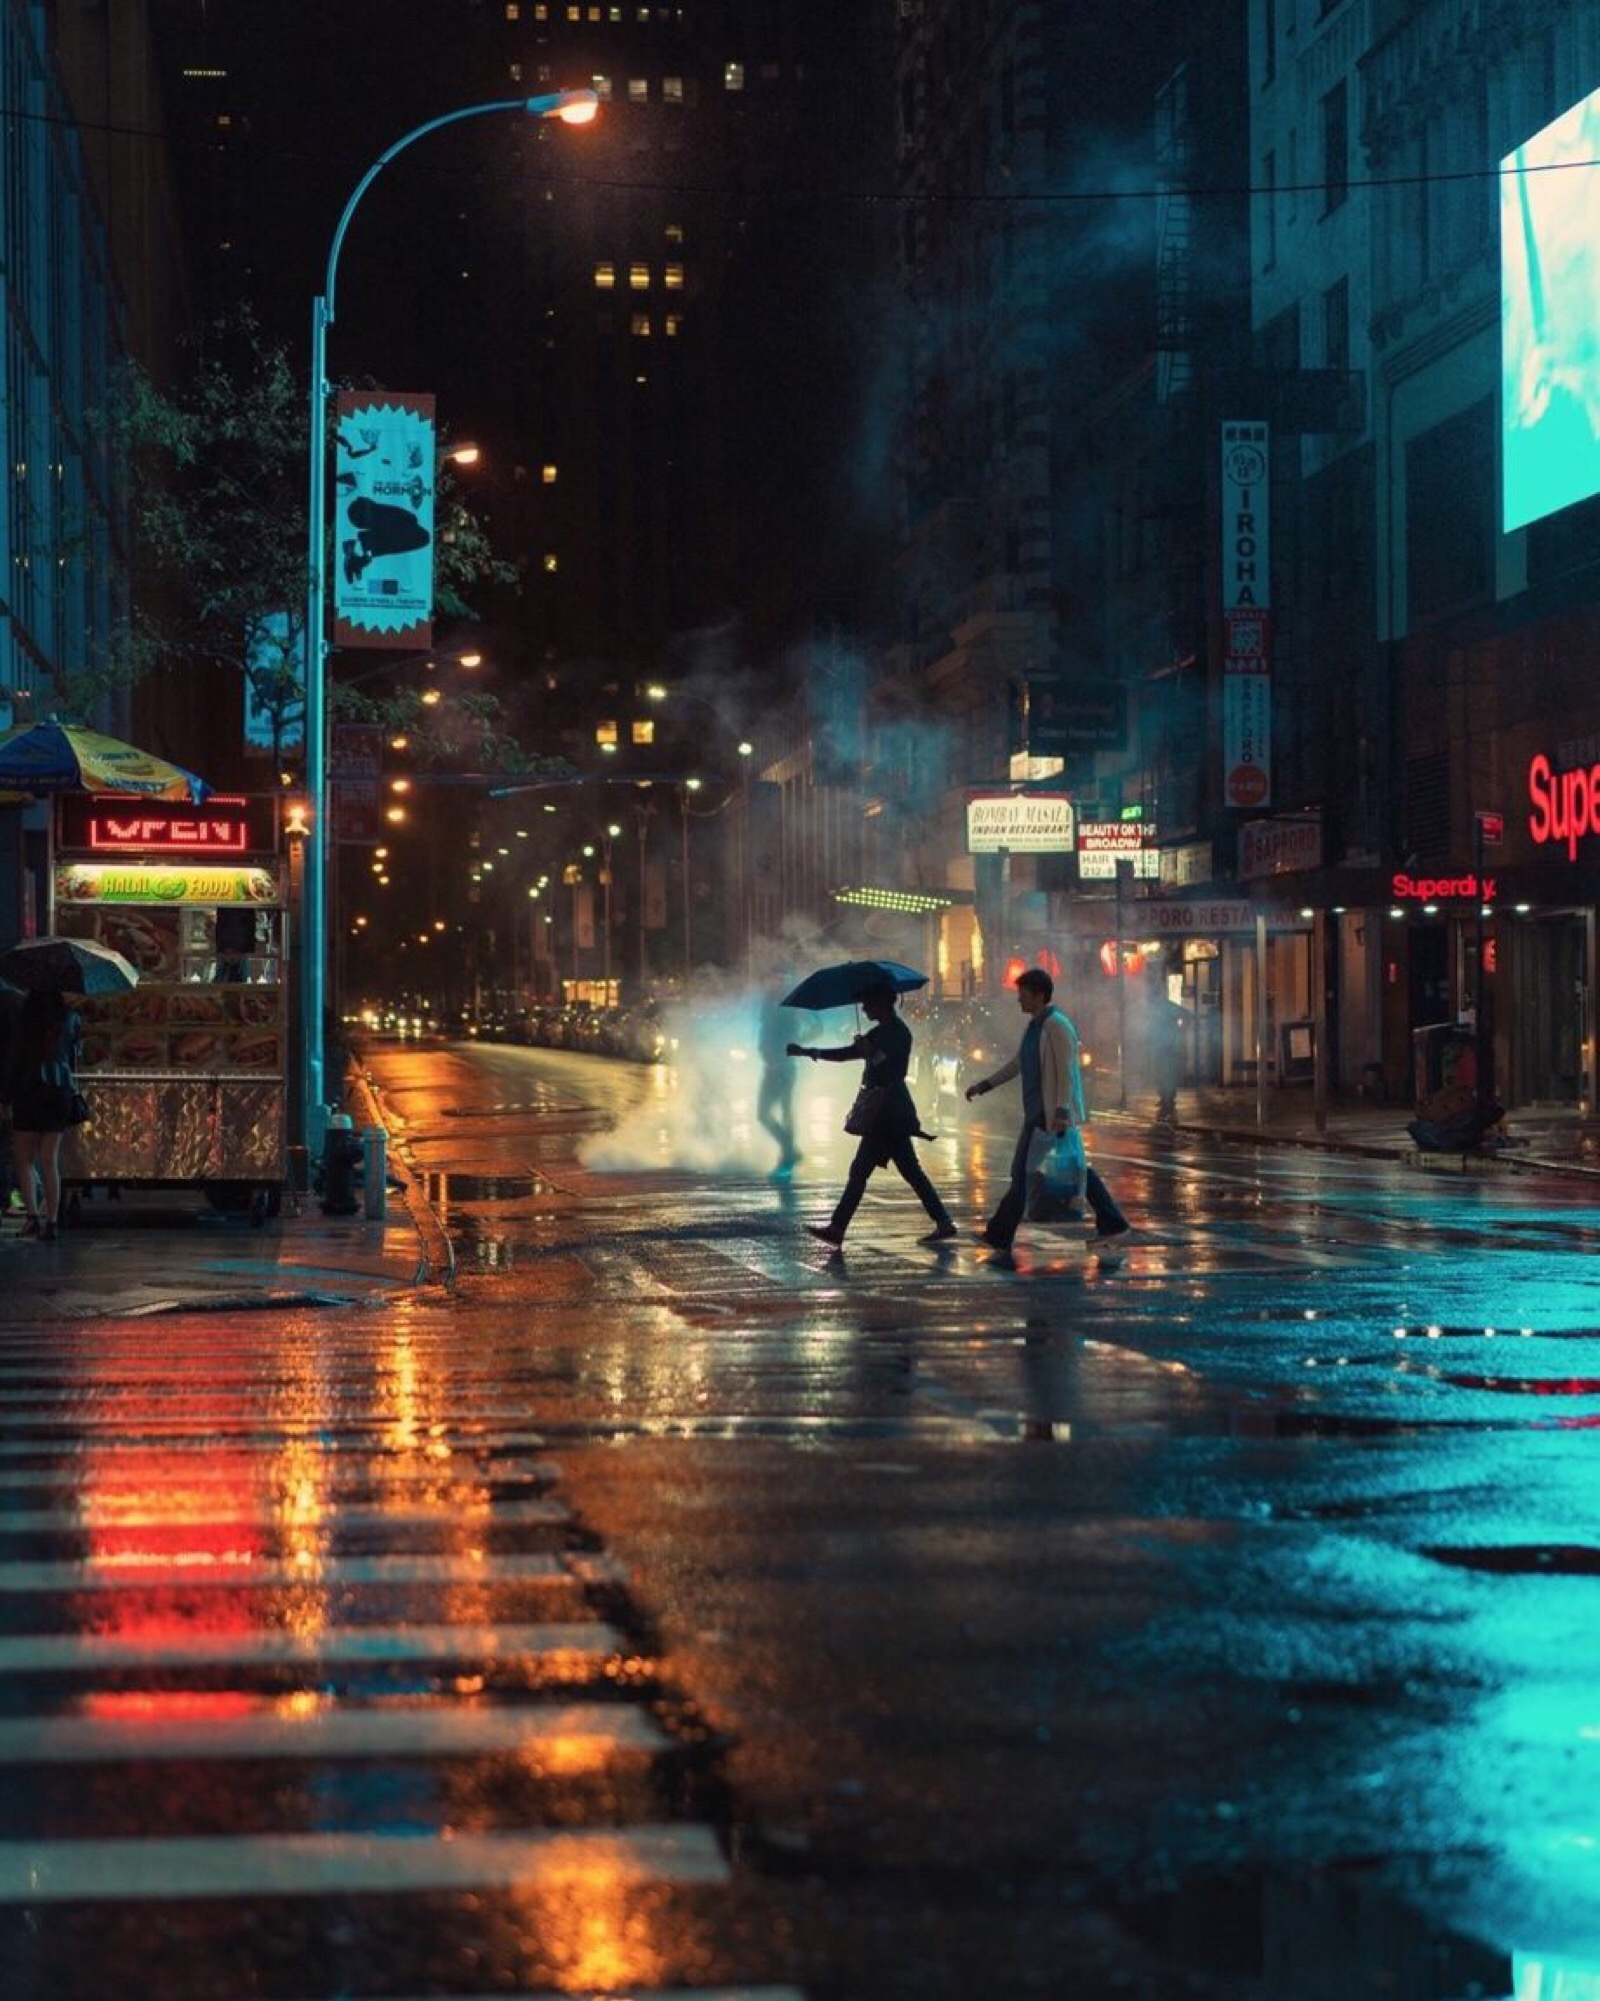 电影画面般光线和色彩的街头摄影作品,eric van nynatten生活在纽约